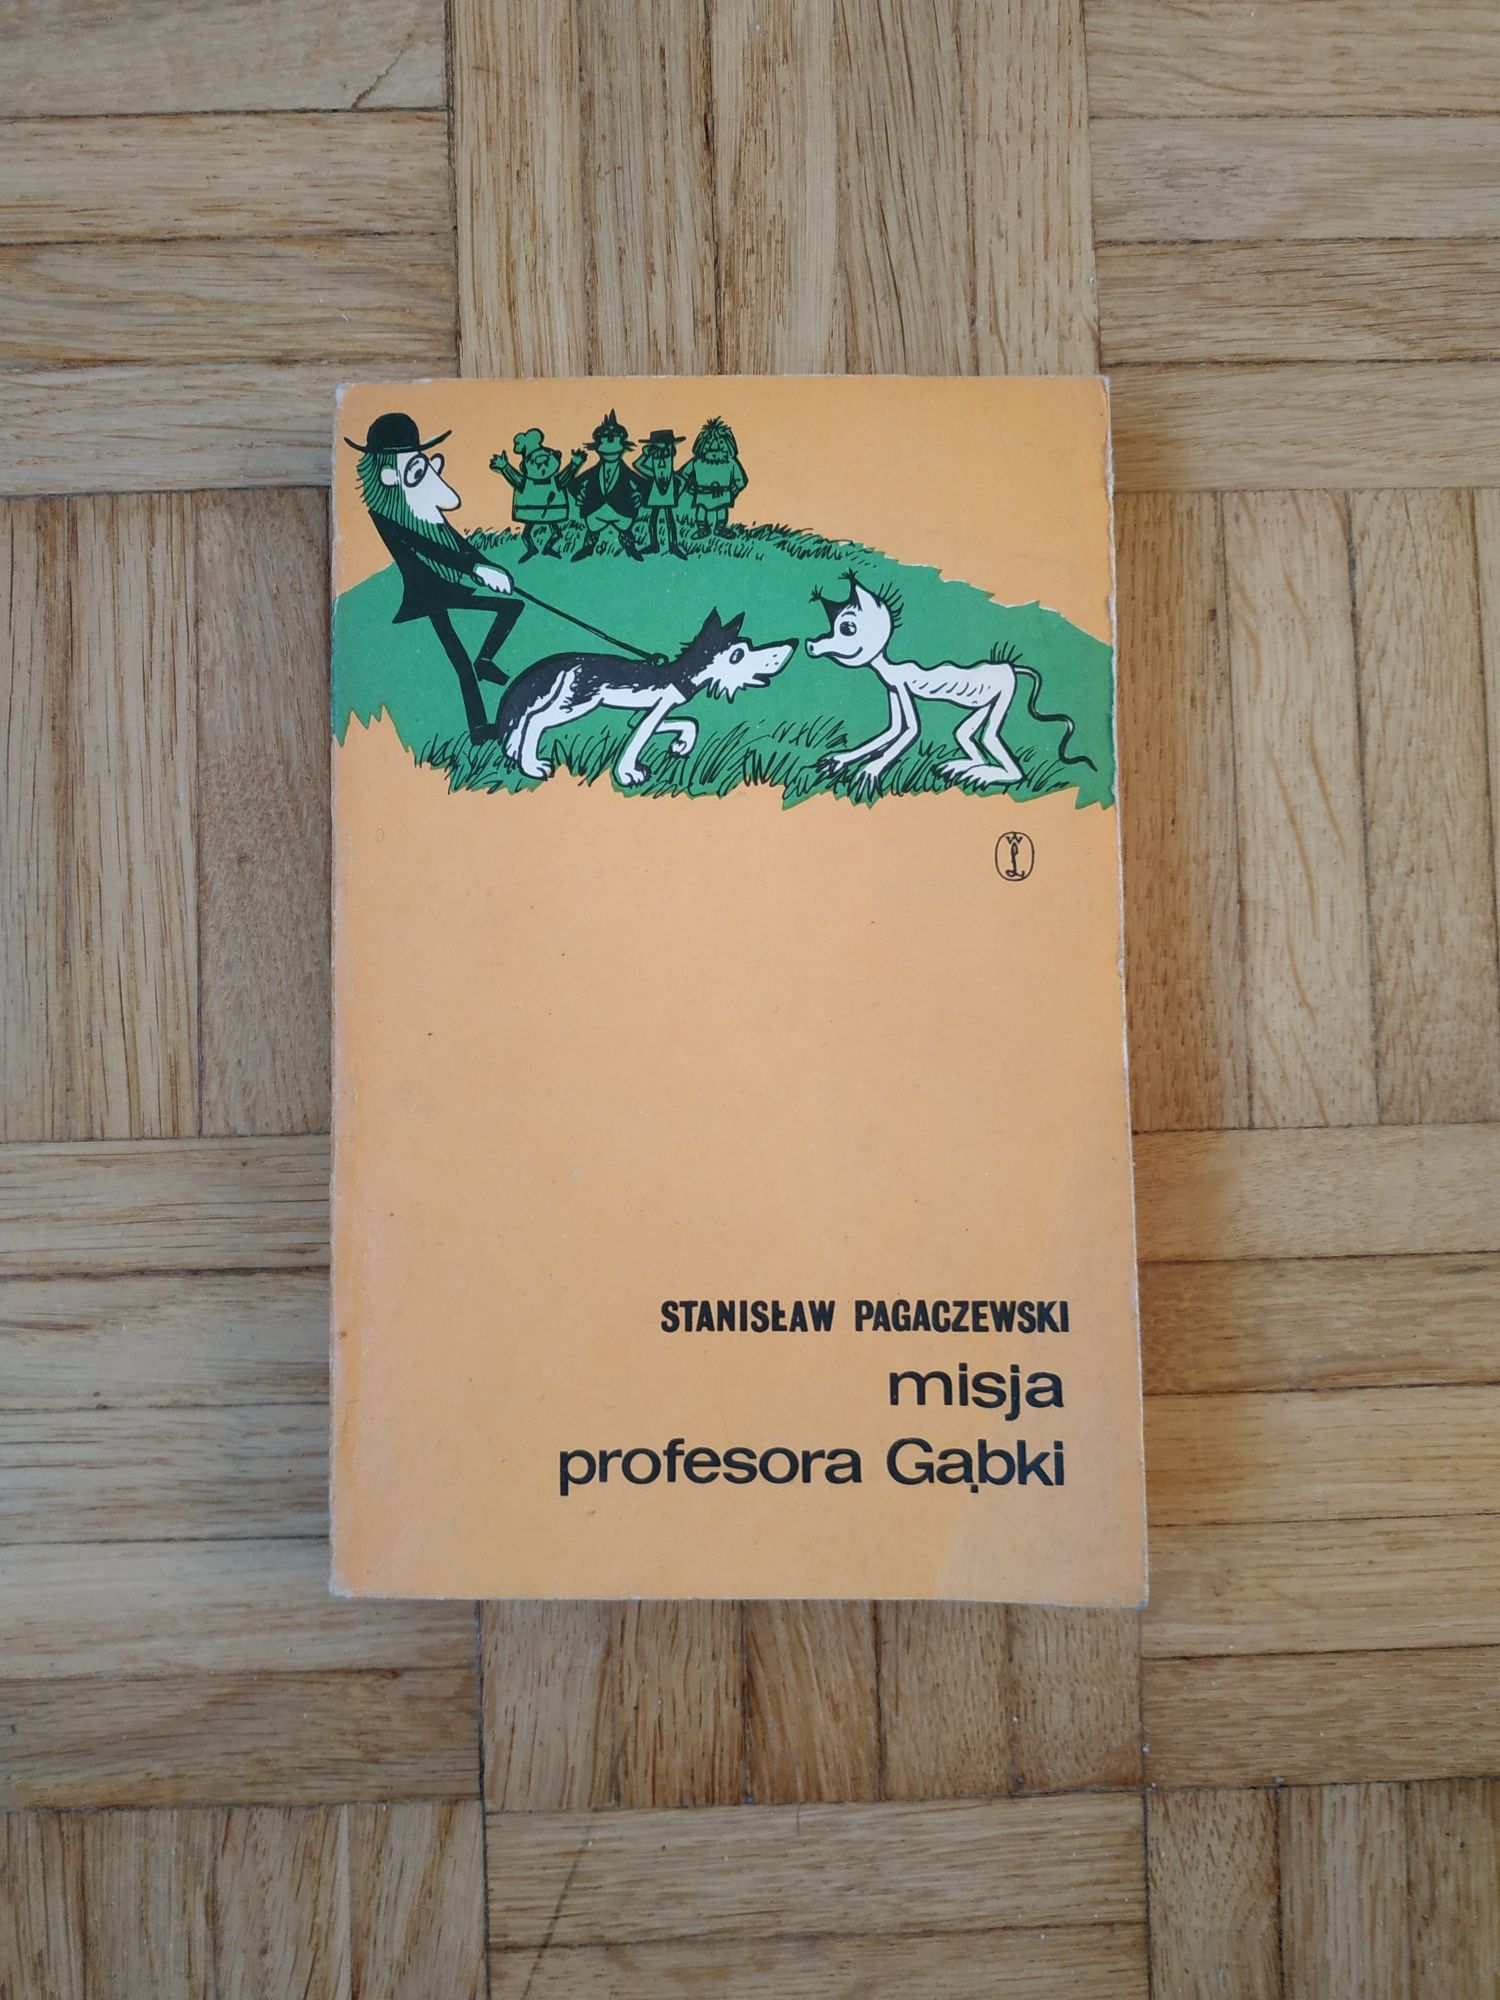 Pagaczewski Stanisław, Misja profesora Gąbki, ilustracje, książka 1975